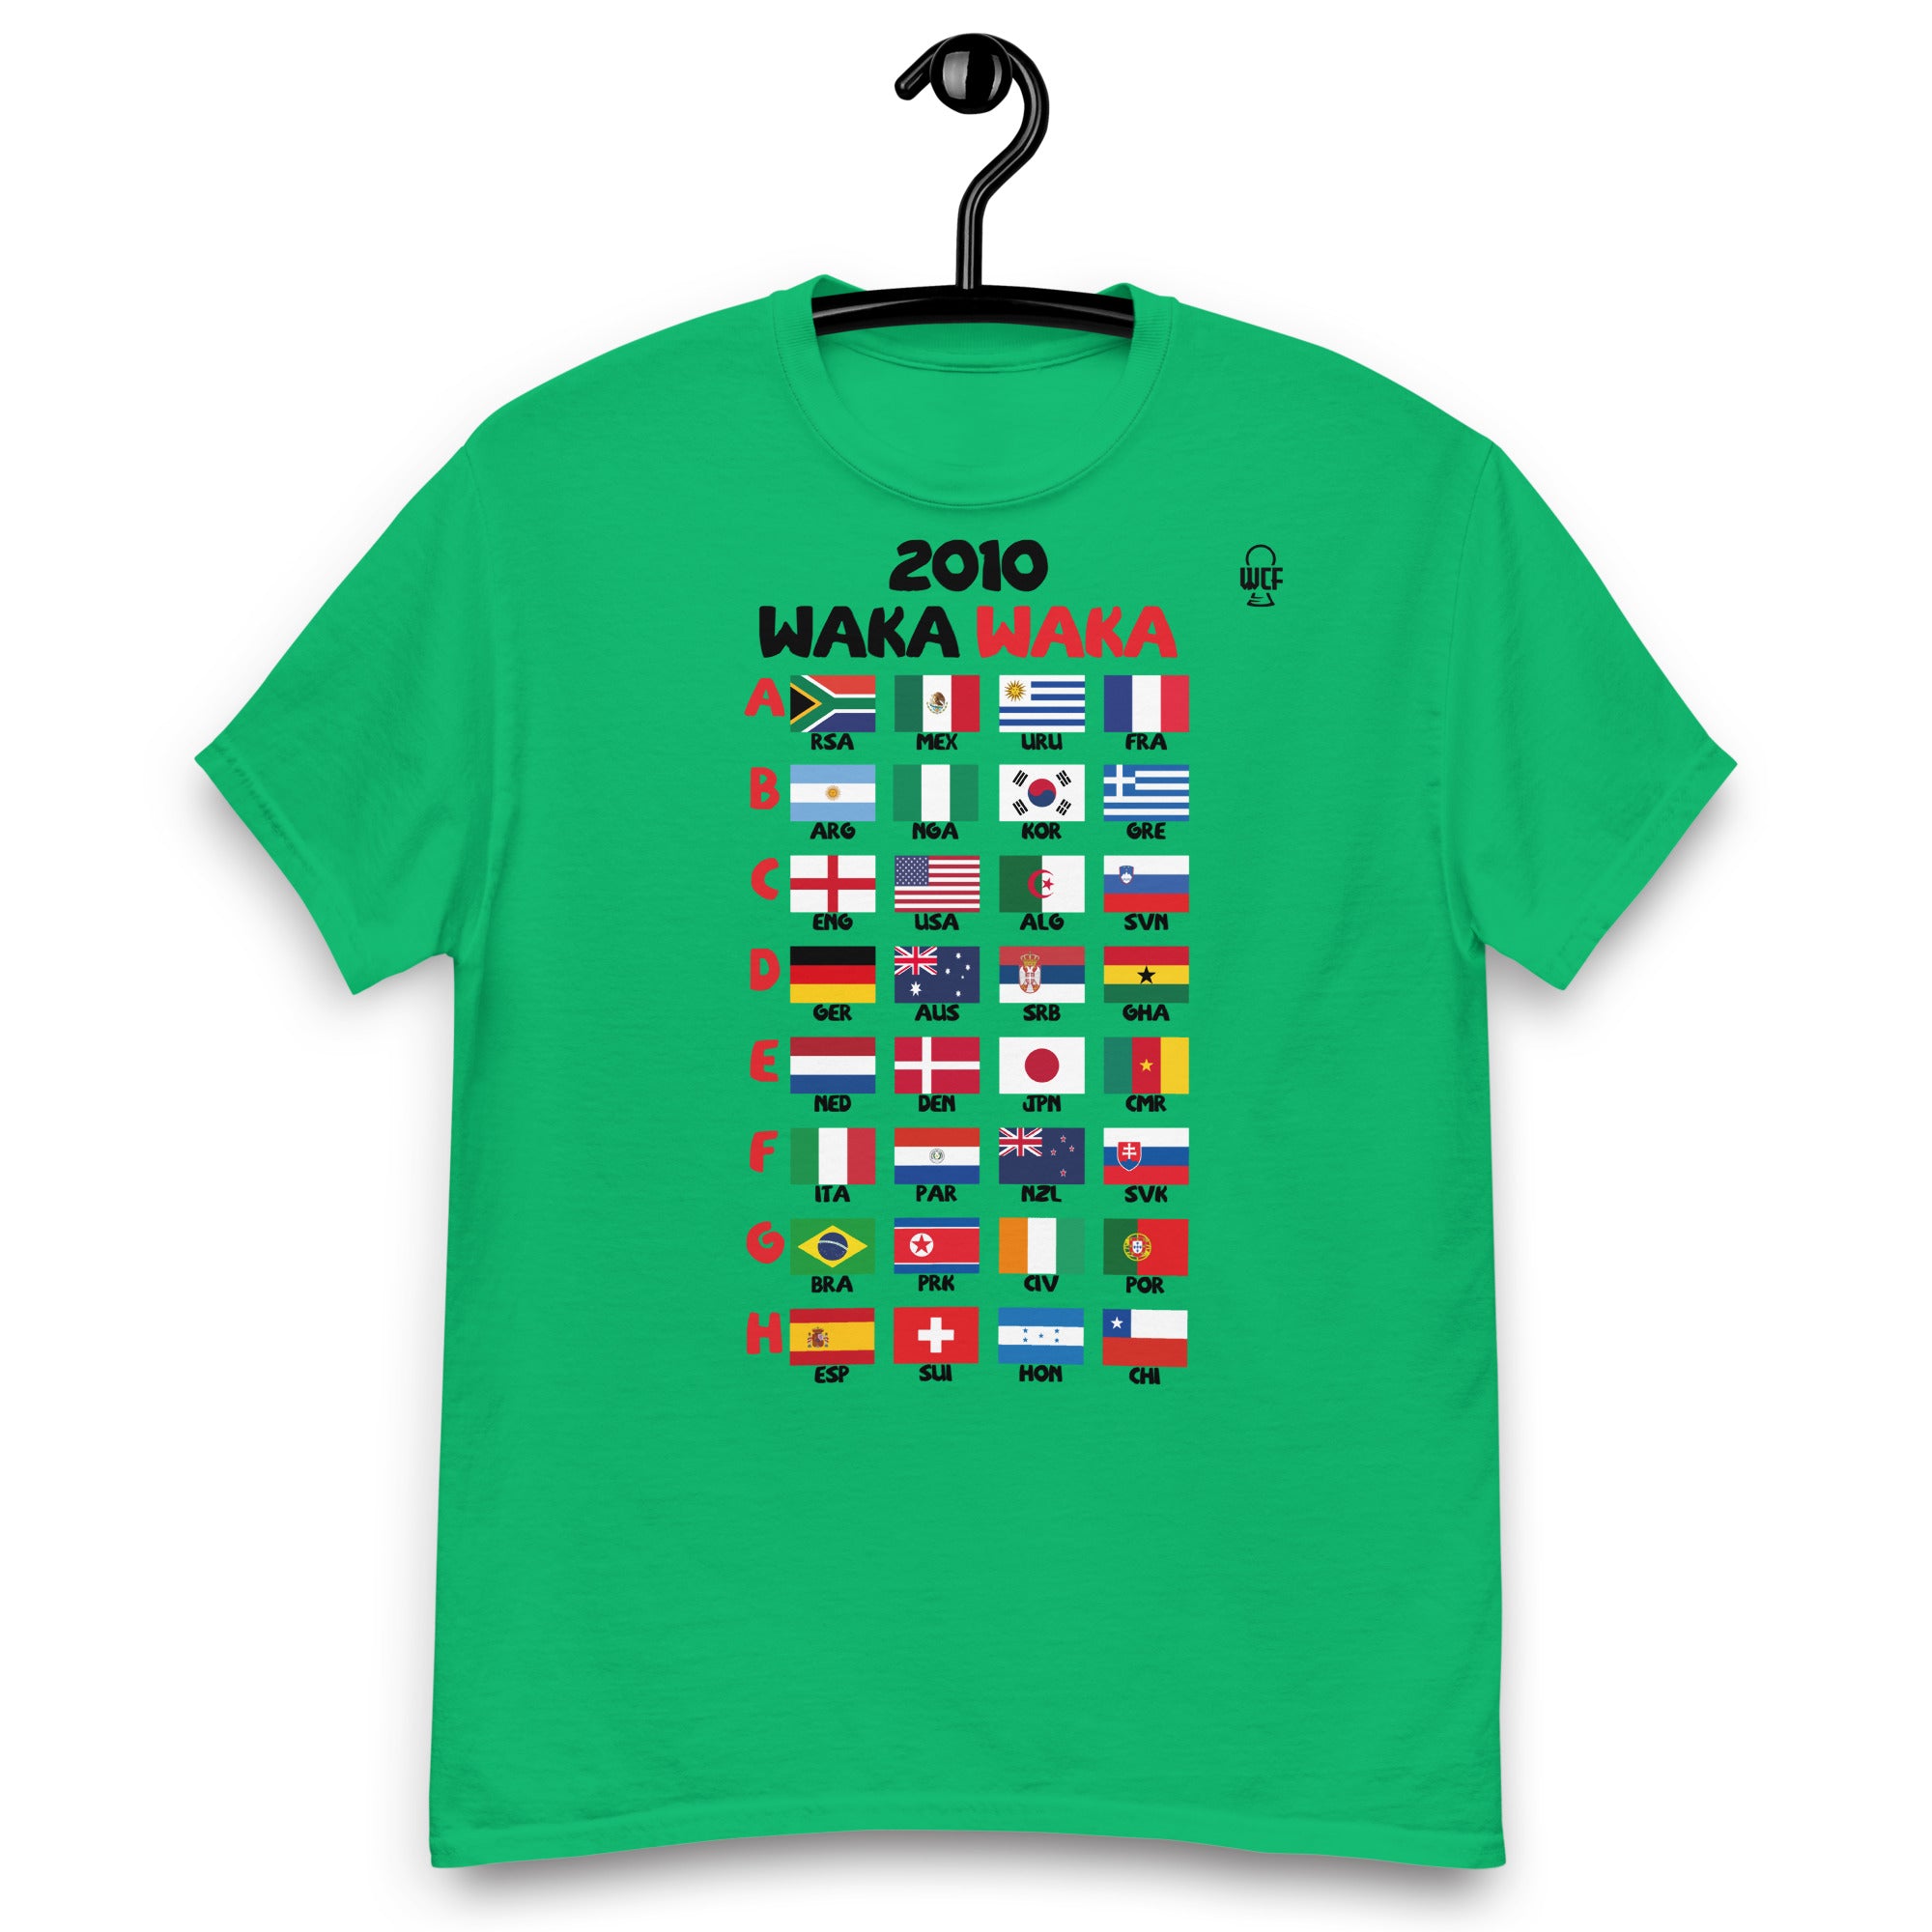 FIFA World Cup South Africa 2010 Classic T-Shirt - WAKA WAKA